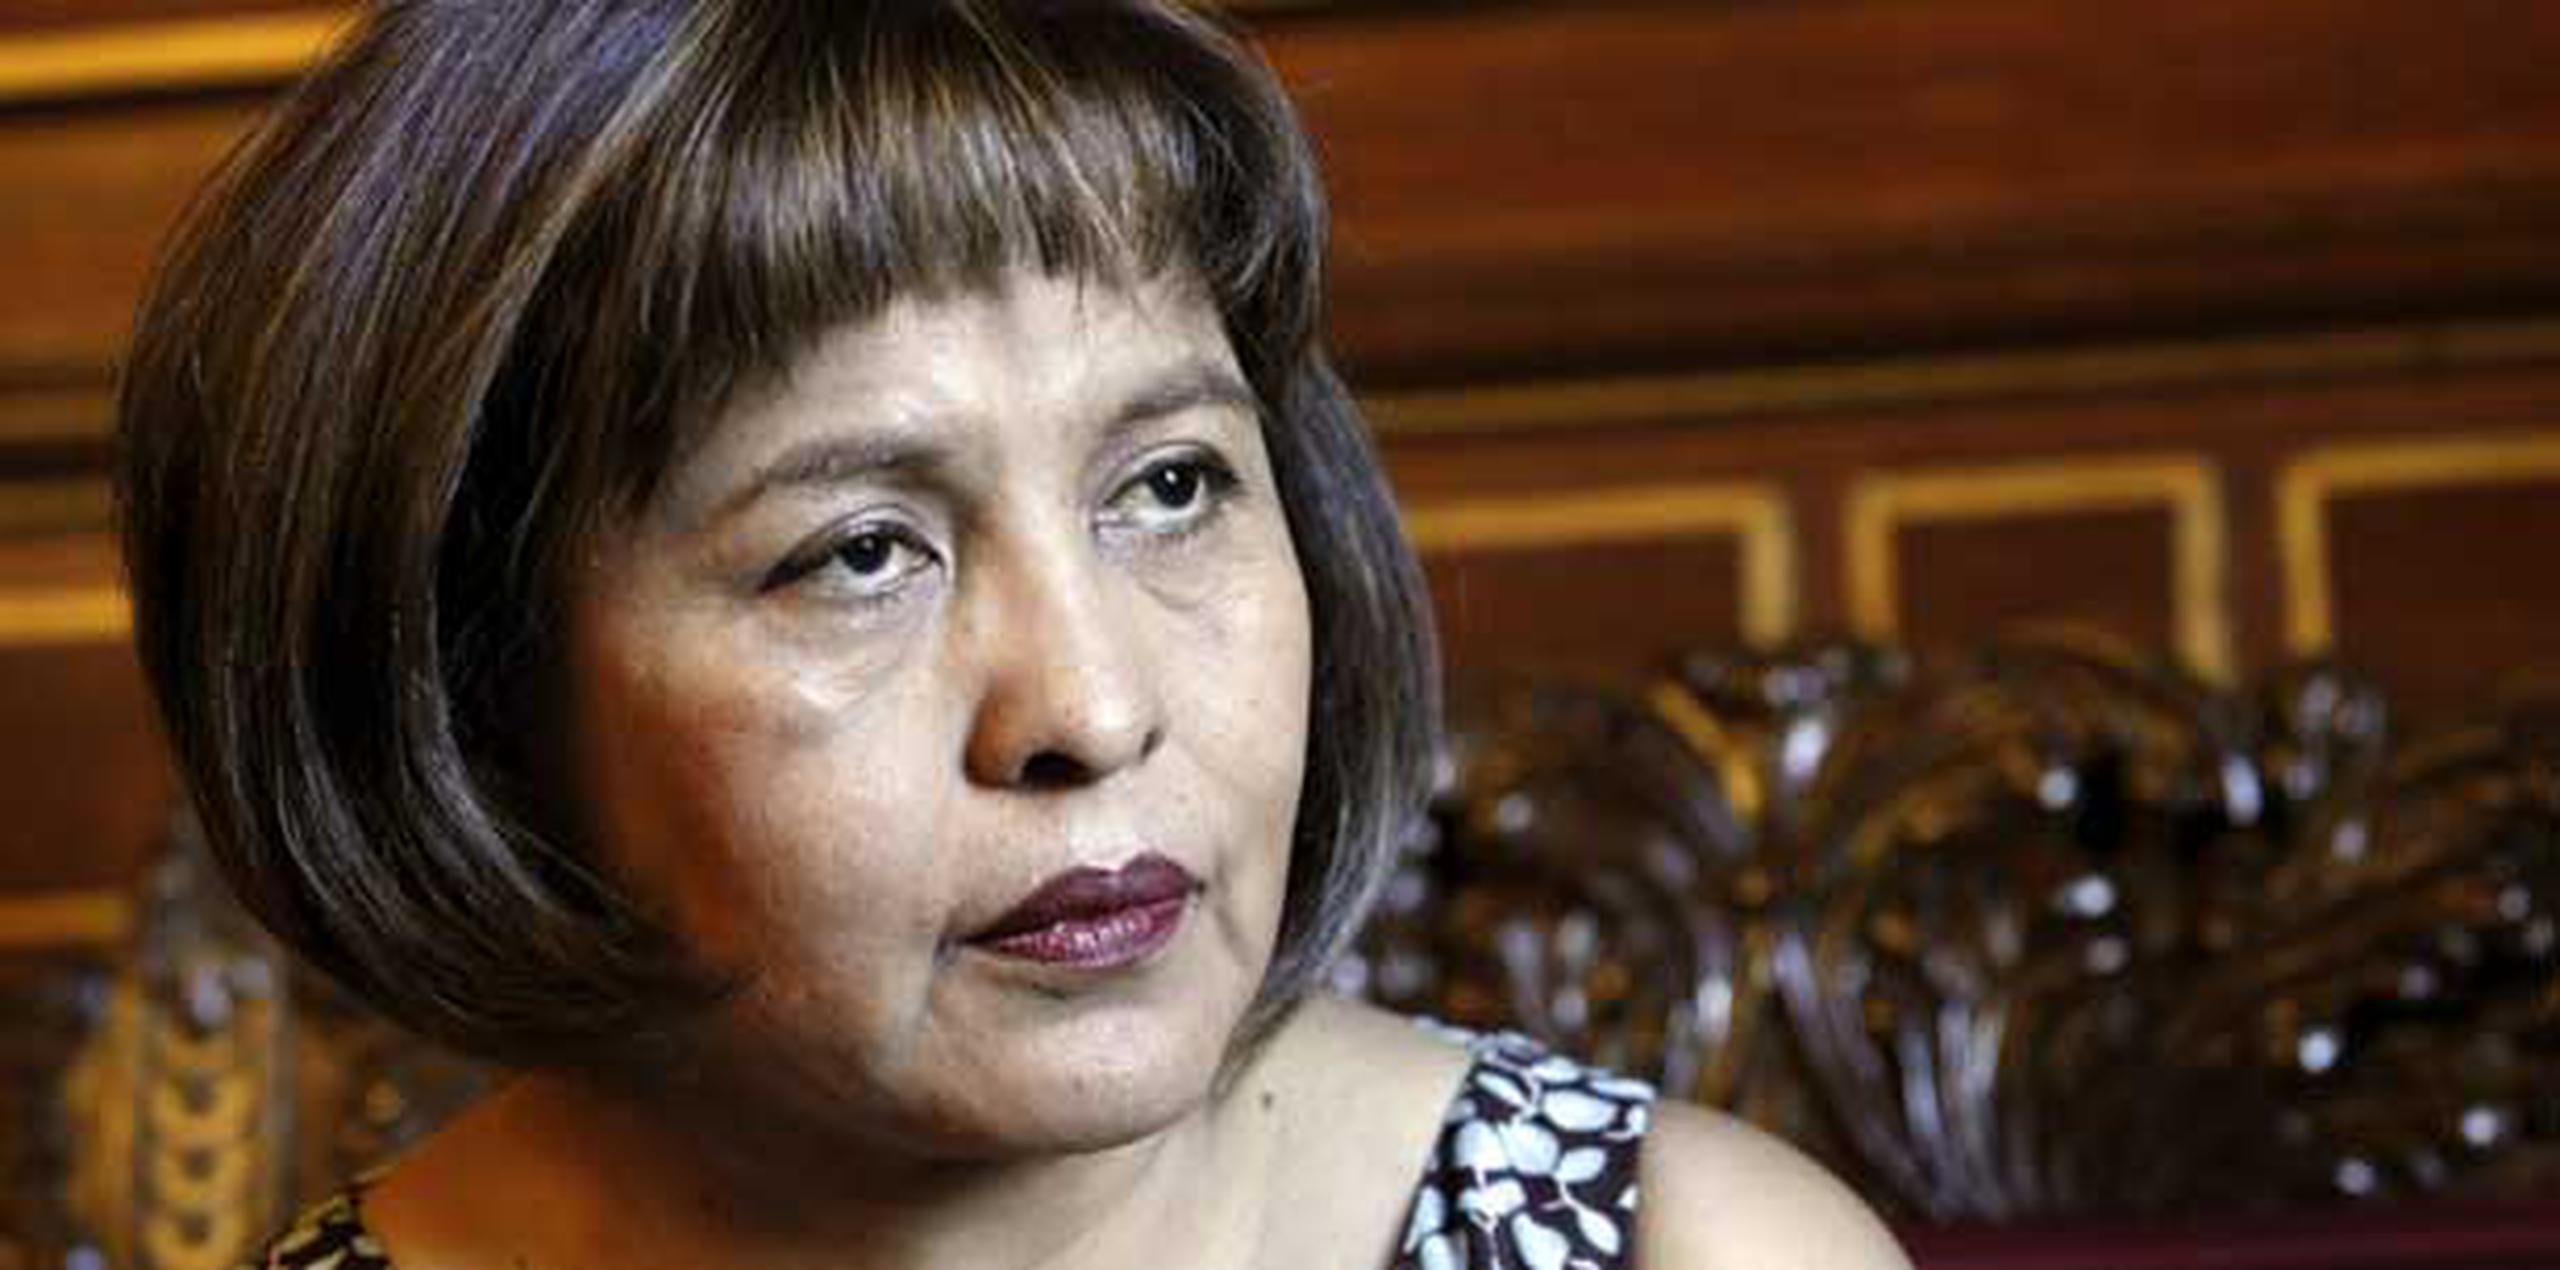 La ministra de Transparencia Institucional y Lucha contra la Corrupción de Bolivia, Nardi Suxo,indicó que "nos sentimos indignados, nos sentimos ofendidos".   (EFE/Zipi)